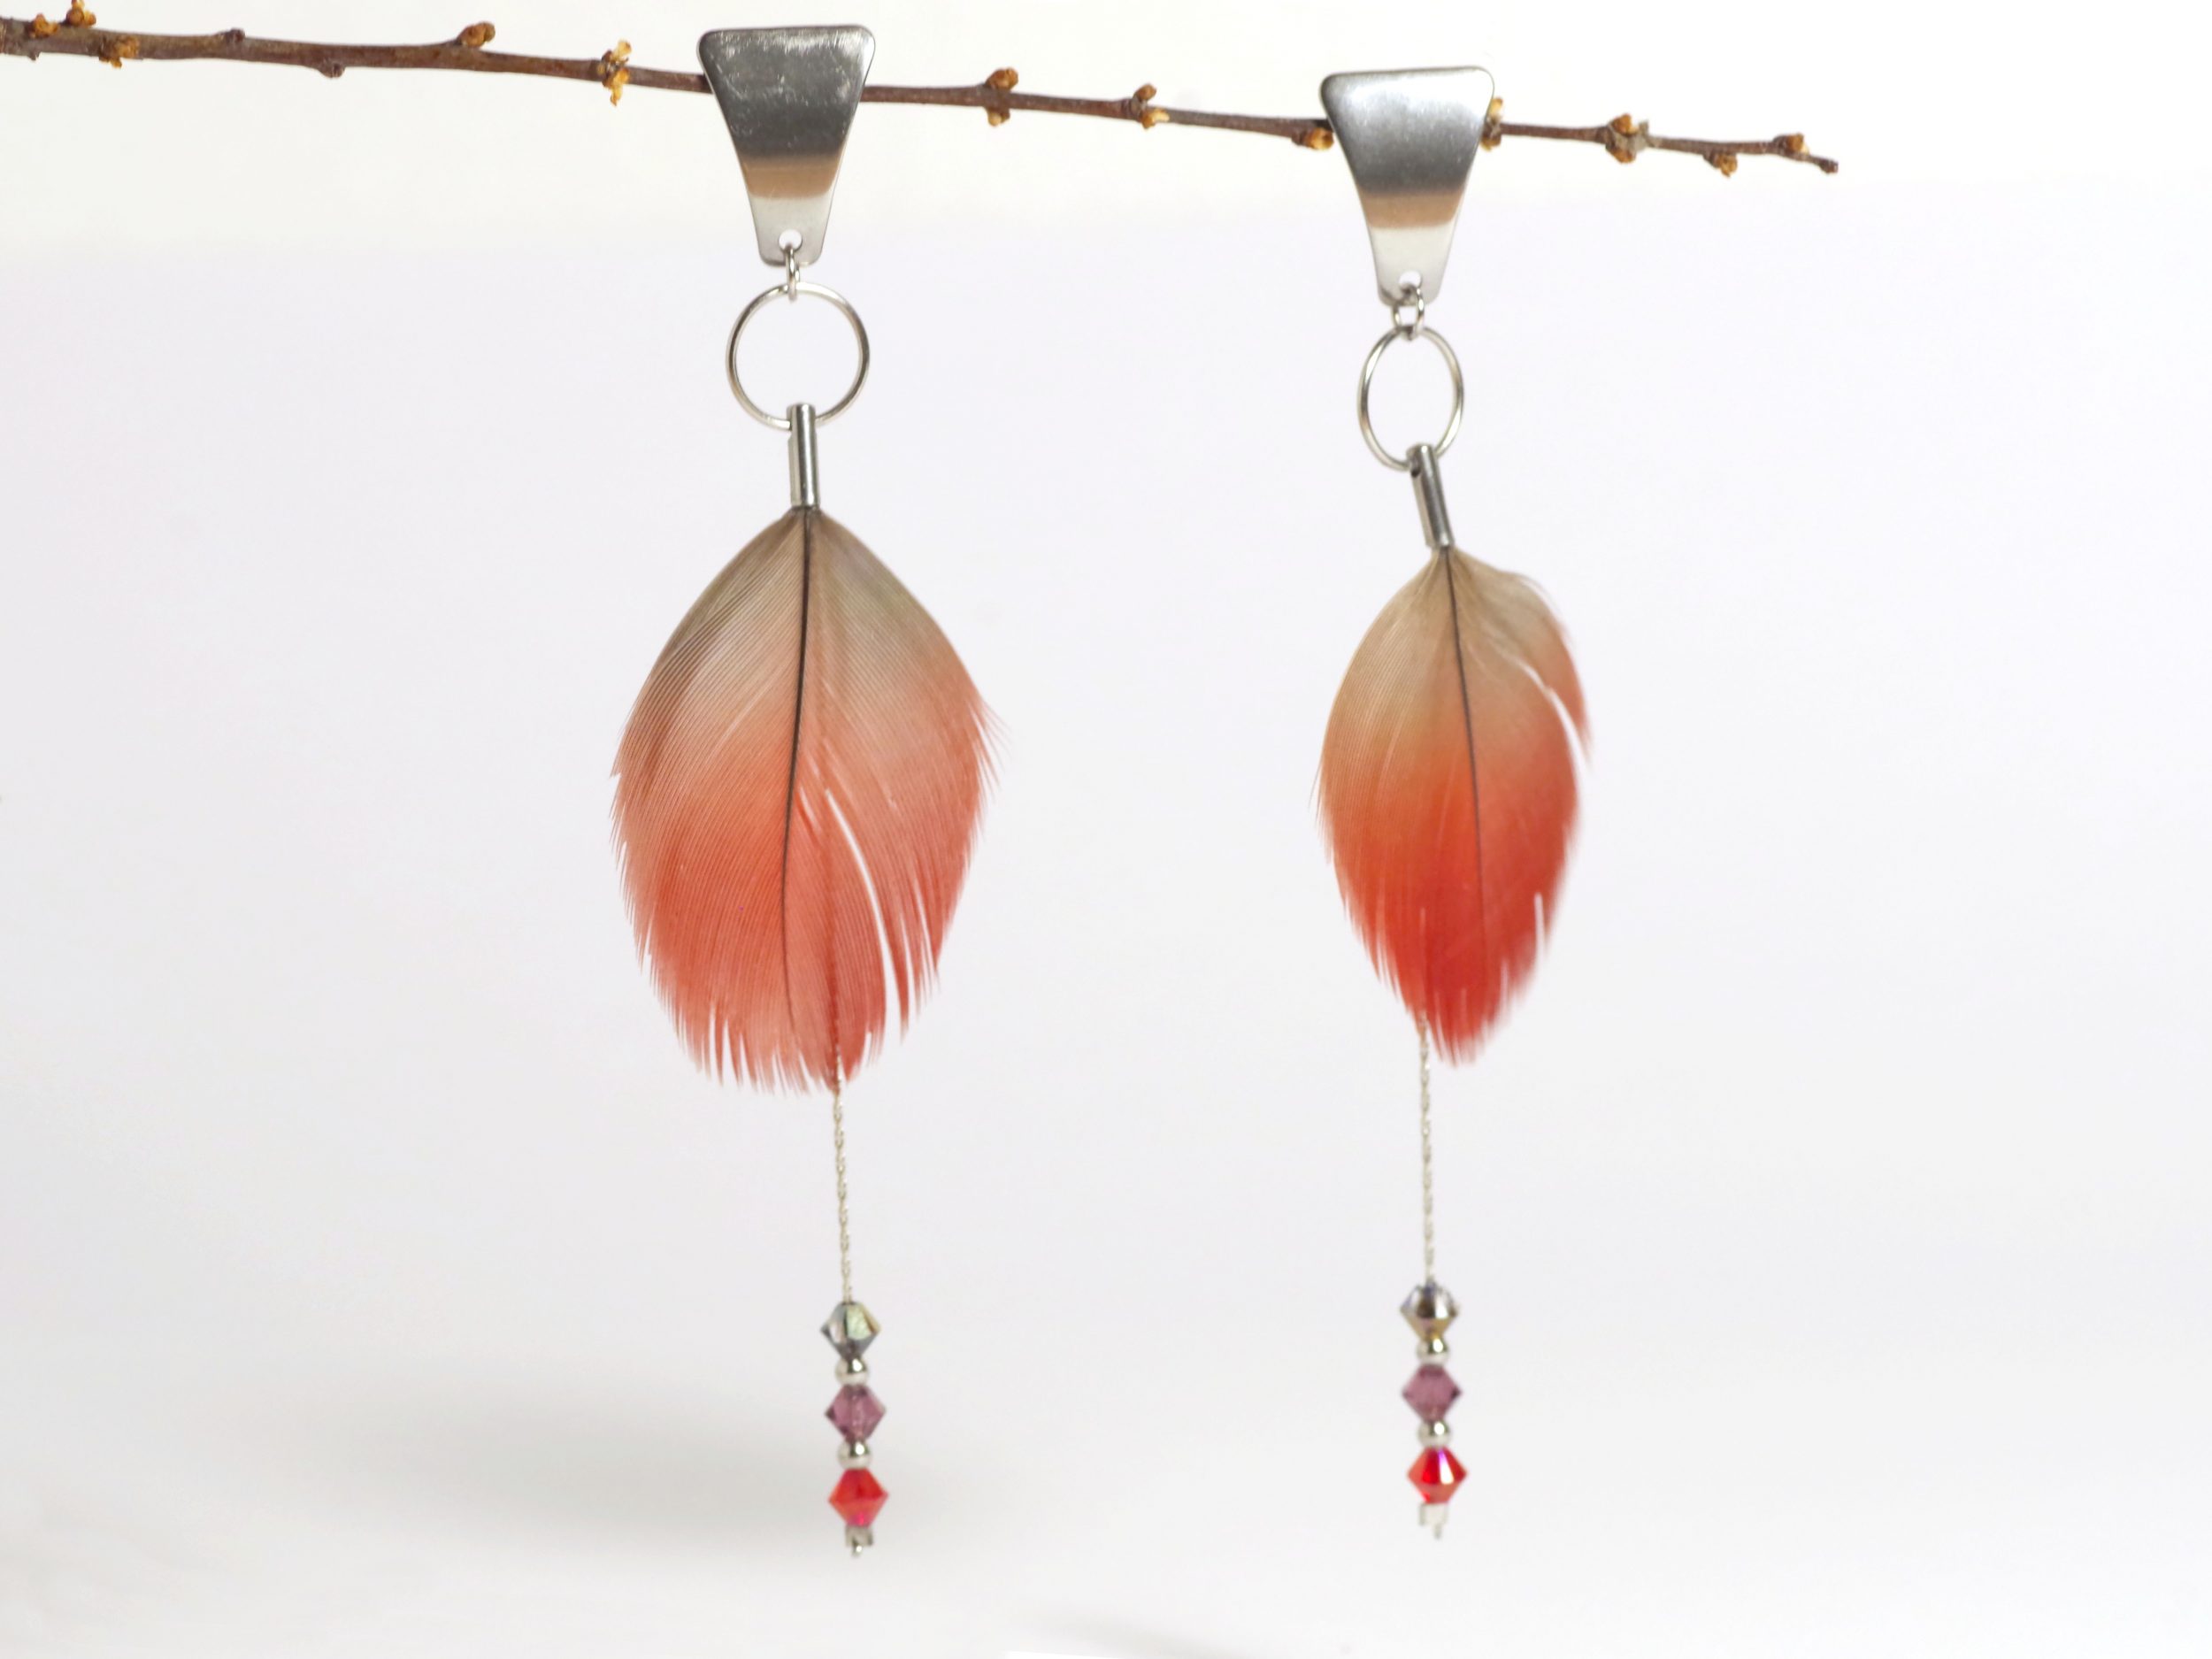 boucles d'oreilles en plumes rouges et chaînes inox avec des petites perles facettées assorties.